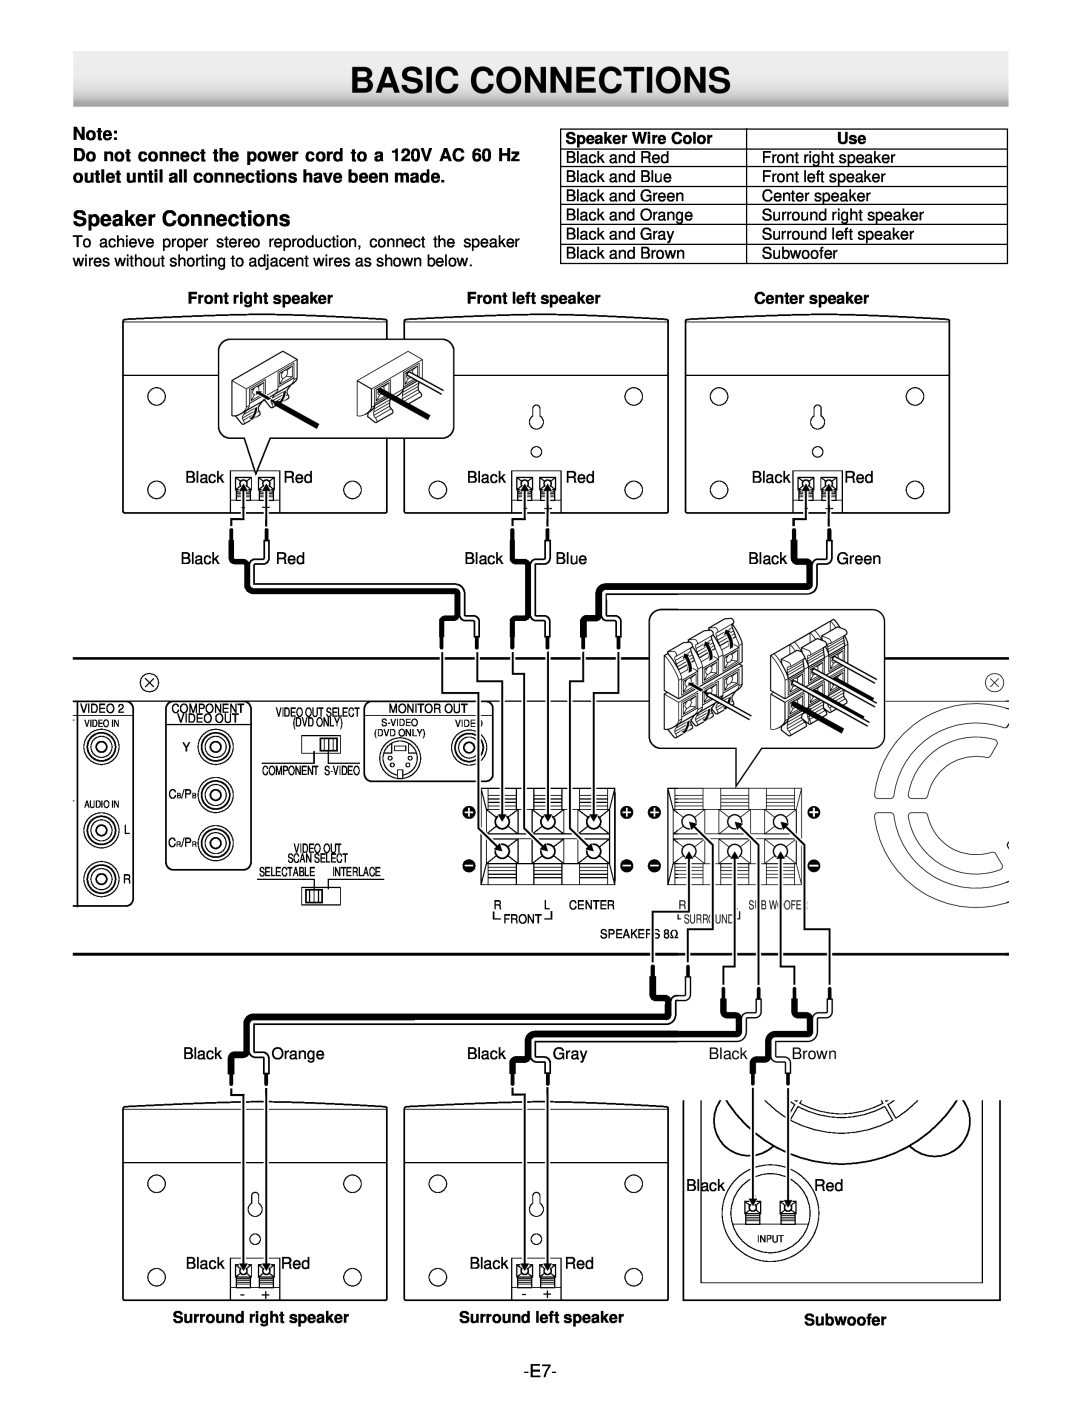 Hitachi DV-S522U Basic Connections, Speaker Connections, Speaker Wire Color, Front right speaker, Front left speaker 